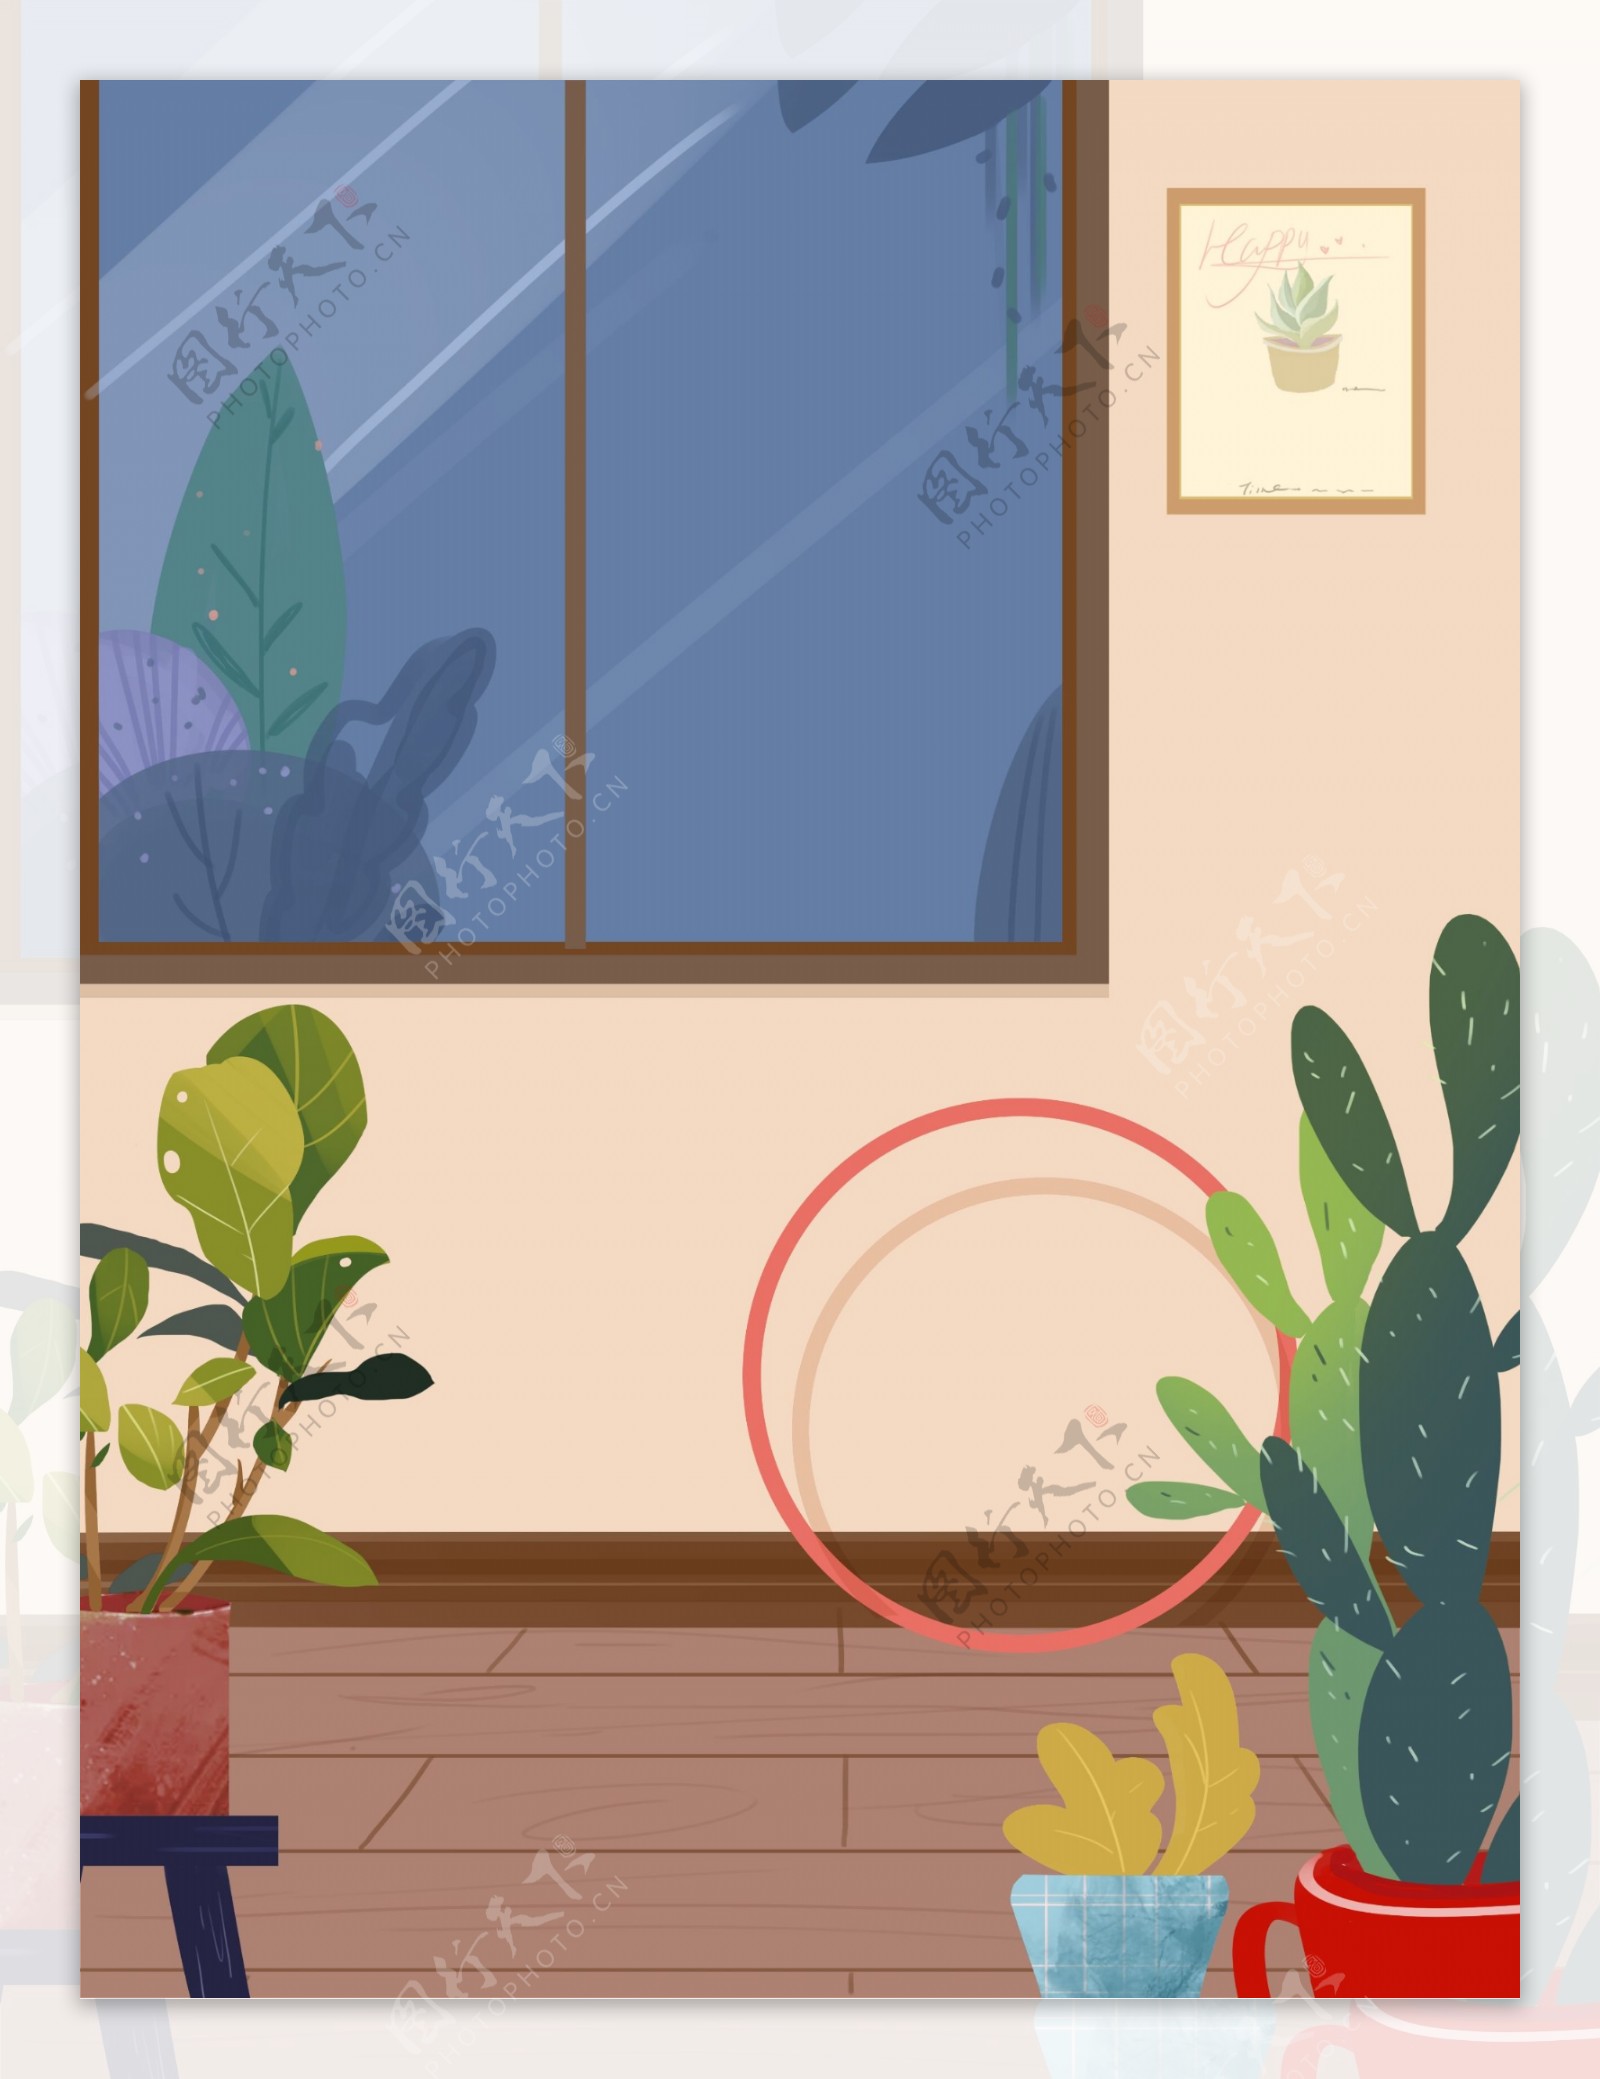 室内植物房间背景